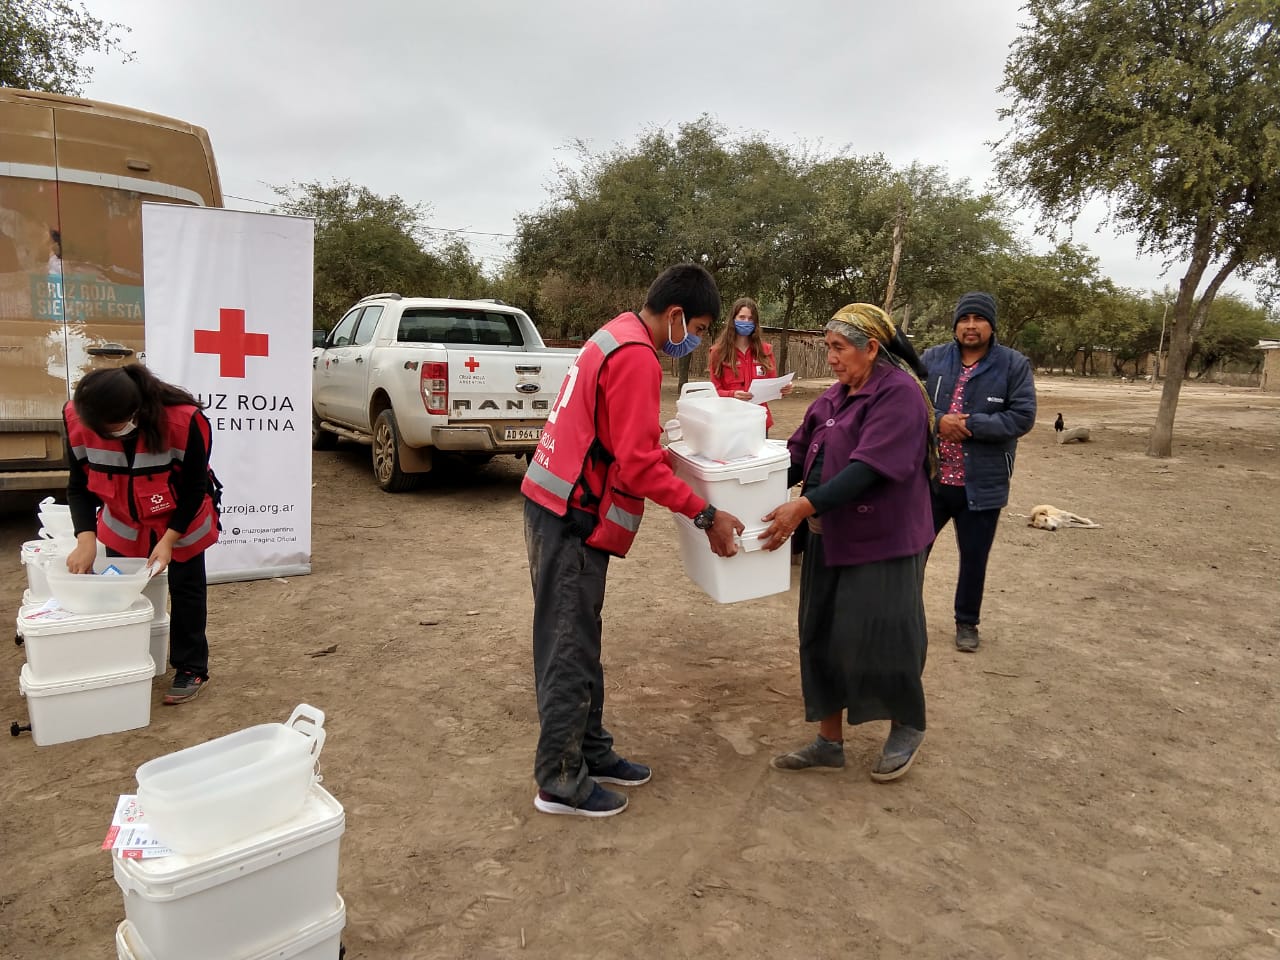 "La Cruz Roja movilizó a nivel mundial a 15 millones de voluntarios. Fue la movilización humanitaria más importante de la historia del organismo", acreditó Pepe Scioli, director del Observatorio Humanitario de Cruz Roja Argentina